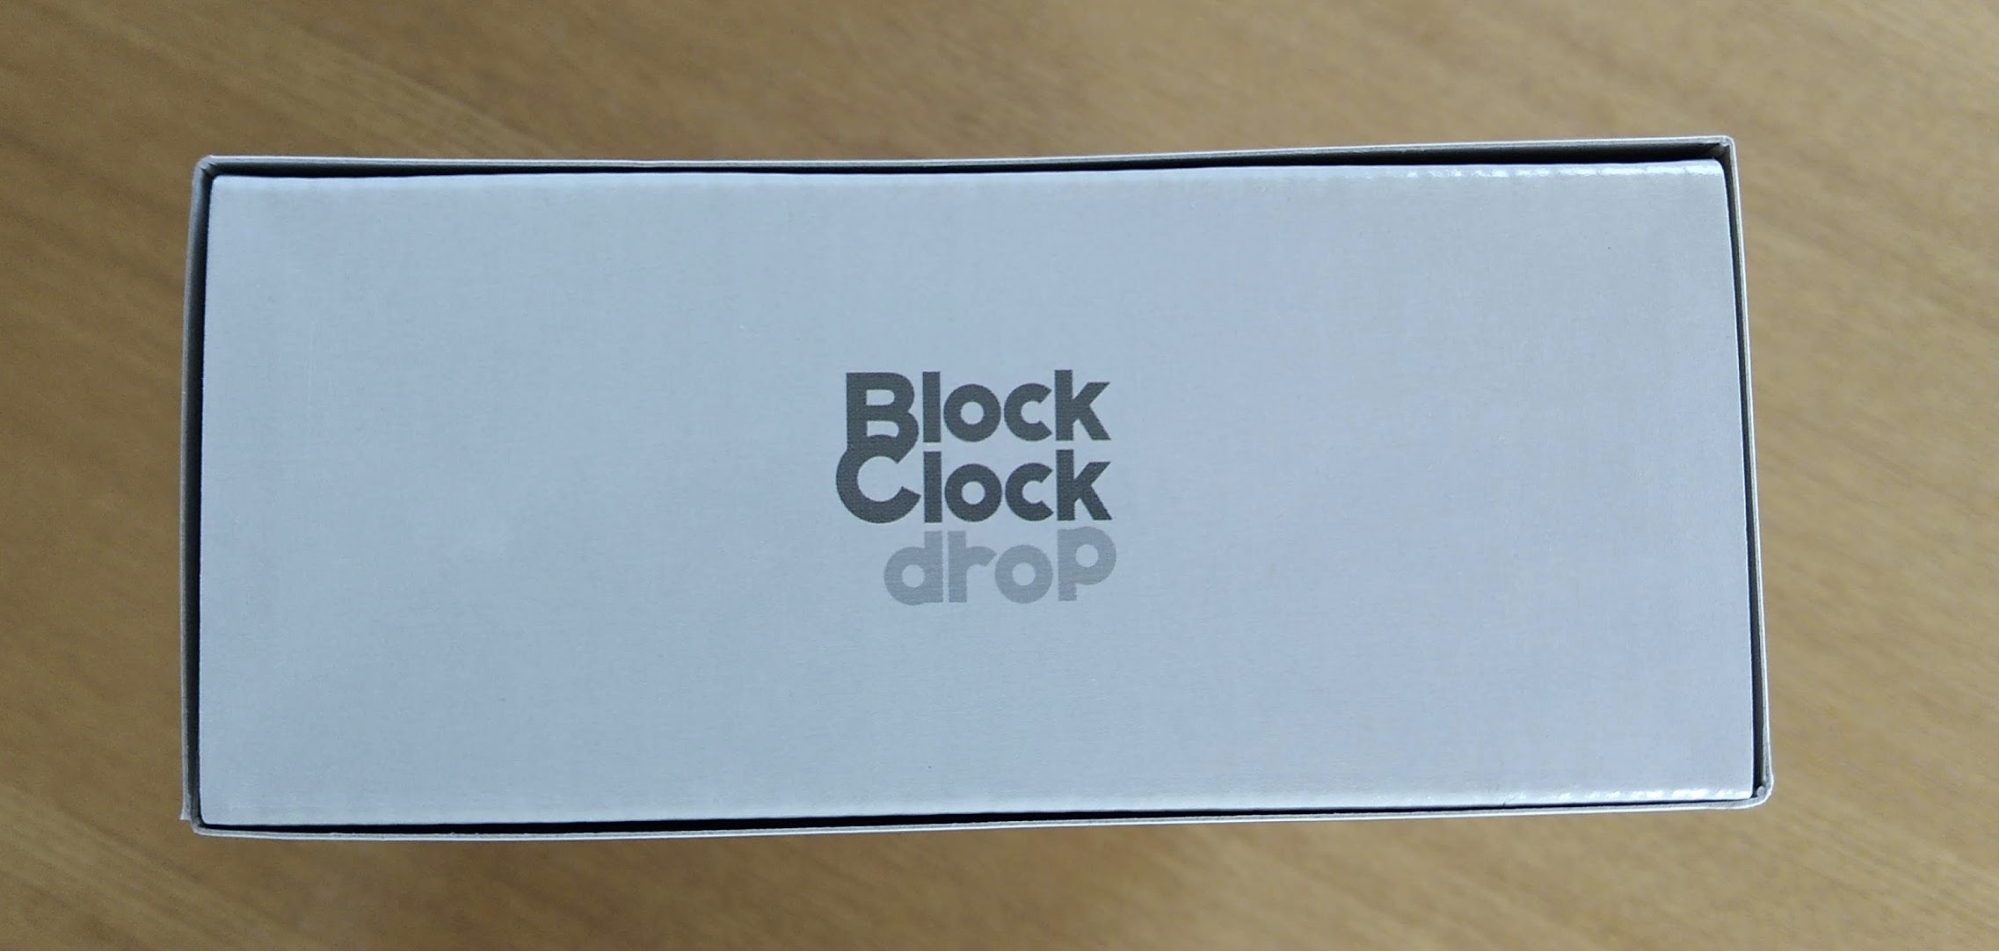 Block Clock(ブロッククロック) drop(ドロップ)パッケージ上部